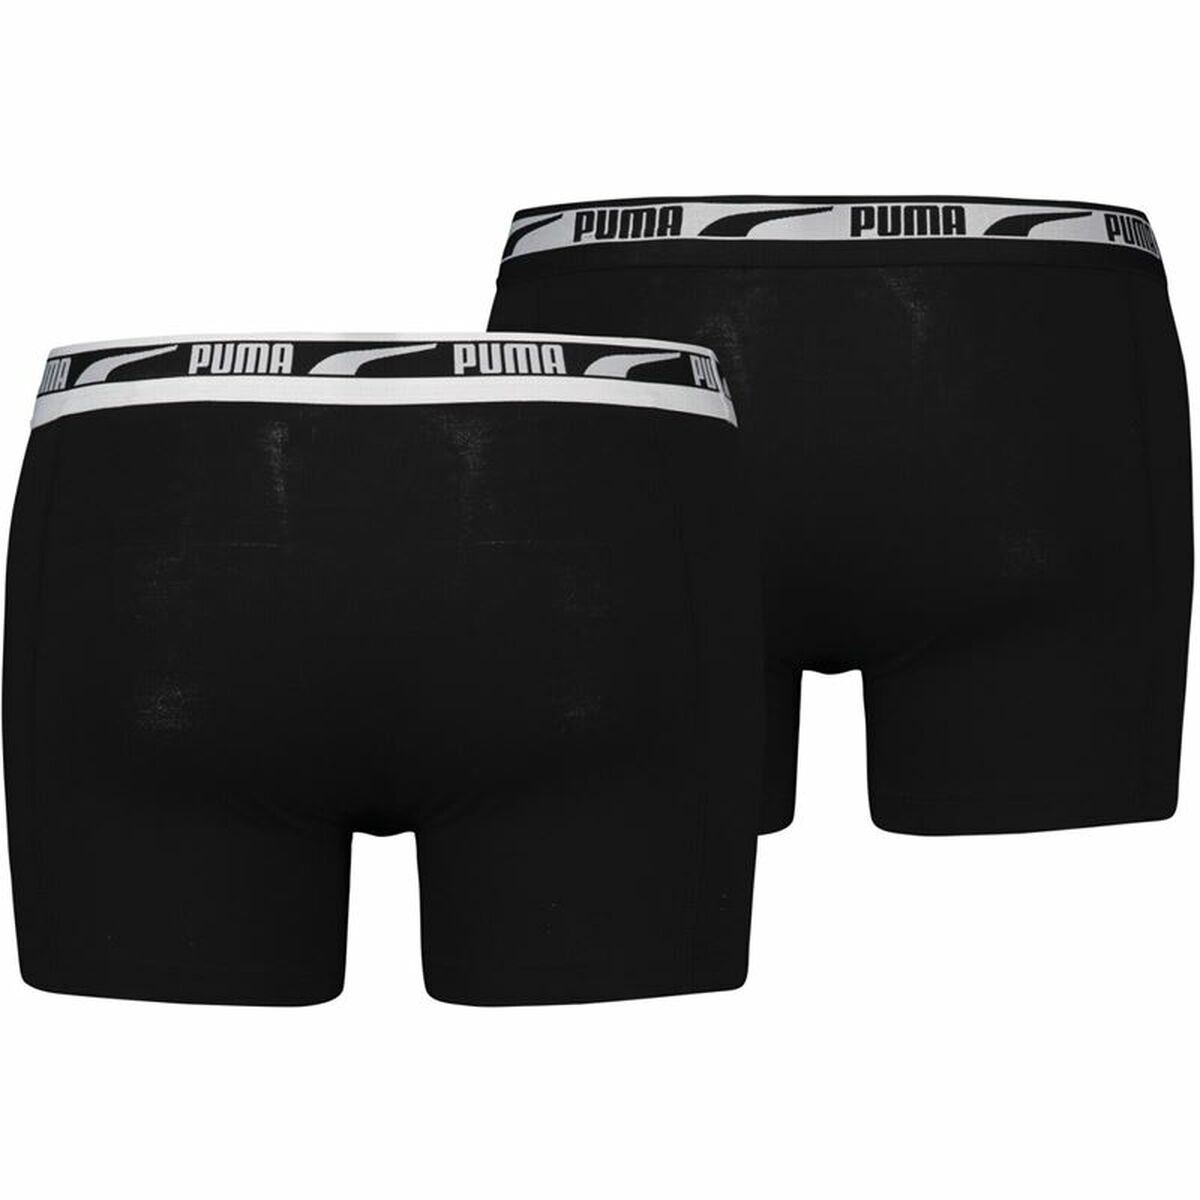 Men's Boxer Shorts Puma Multi Logo Black 2 Units